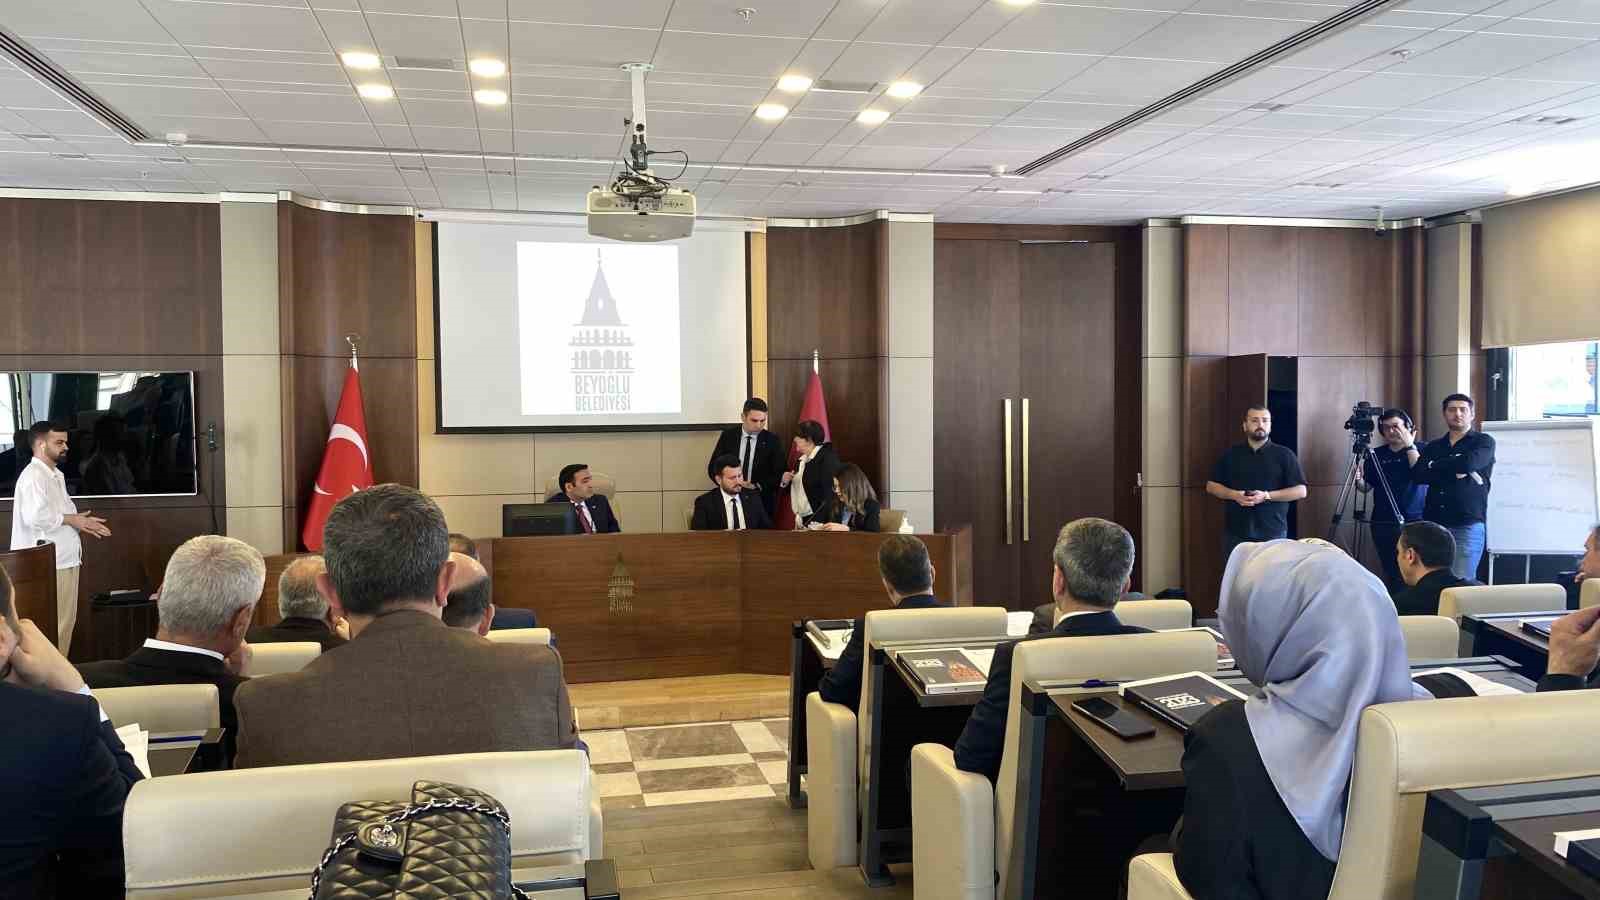 Beyoğlu Belediyesi’nde seçimlerden sonra ilk meclis toplantısı yapıldı
